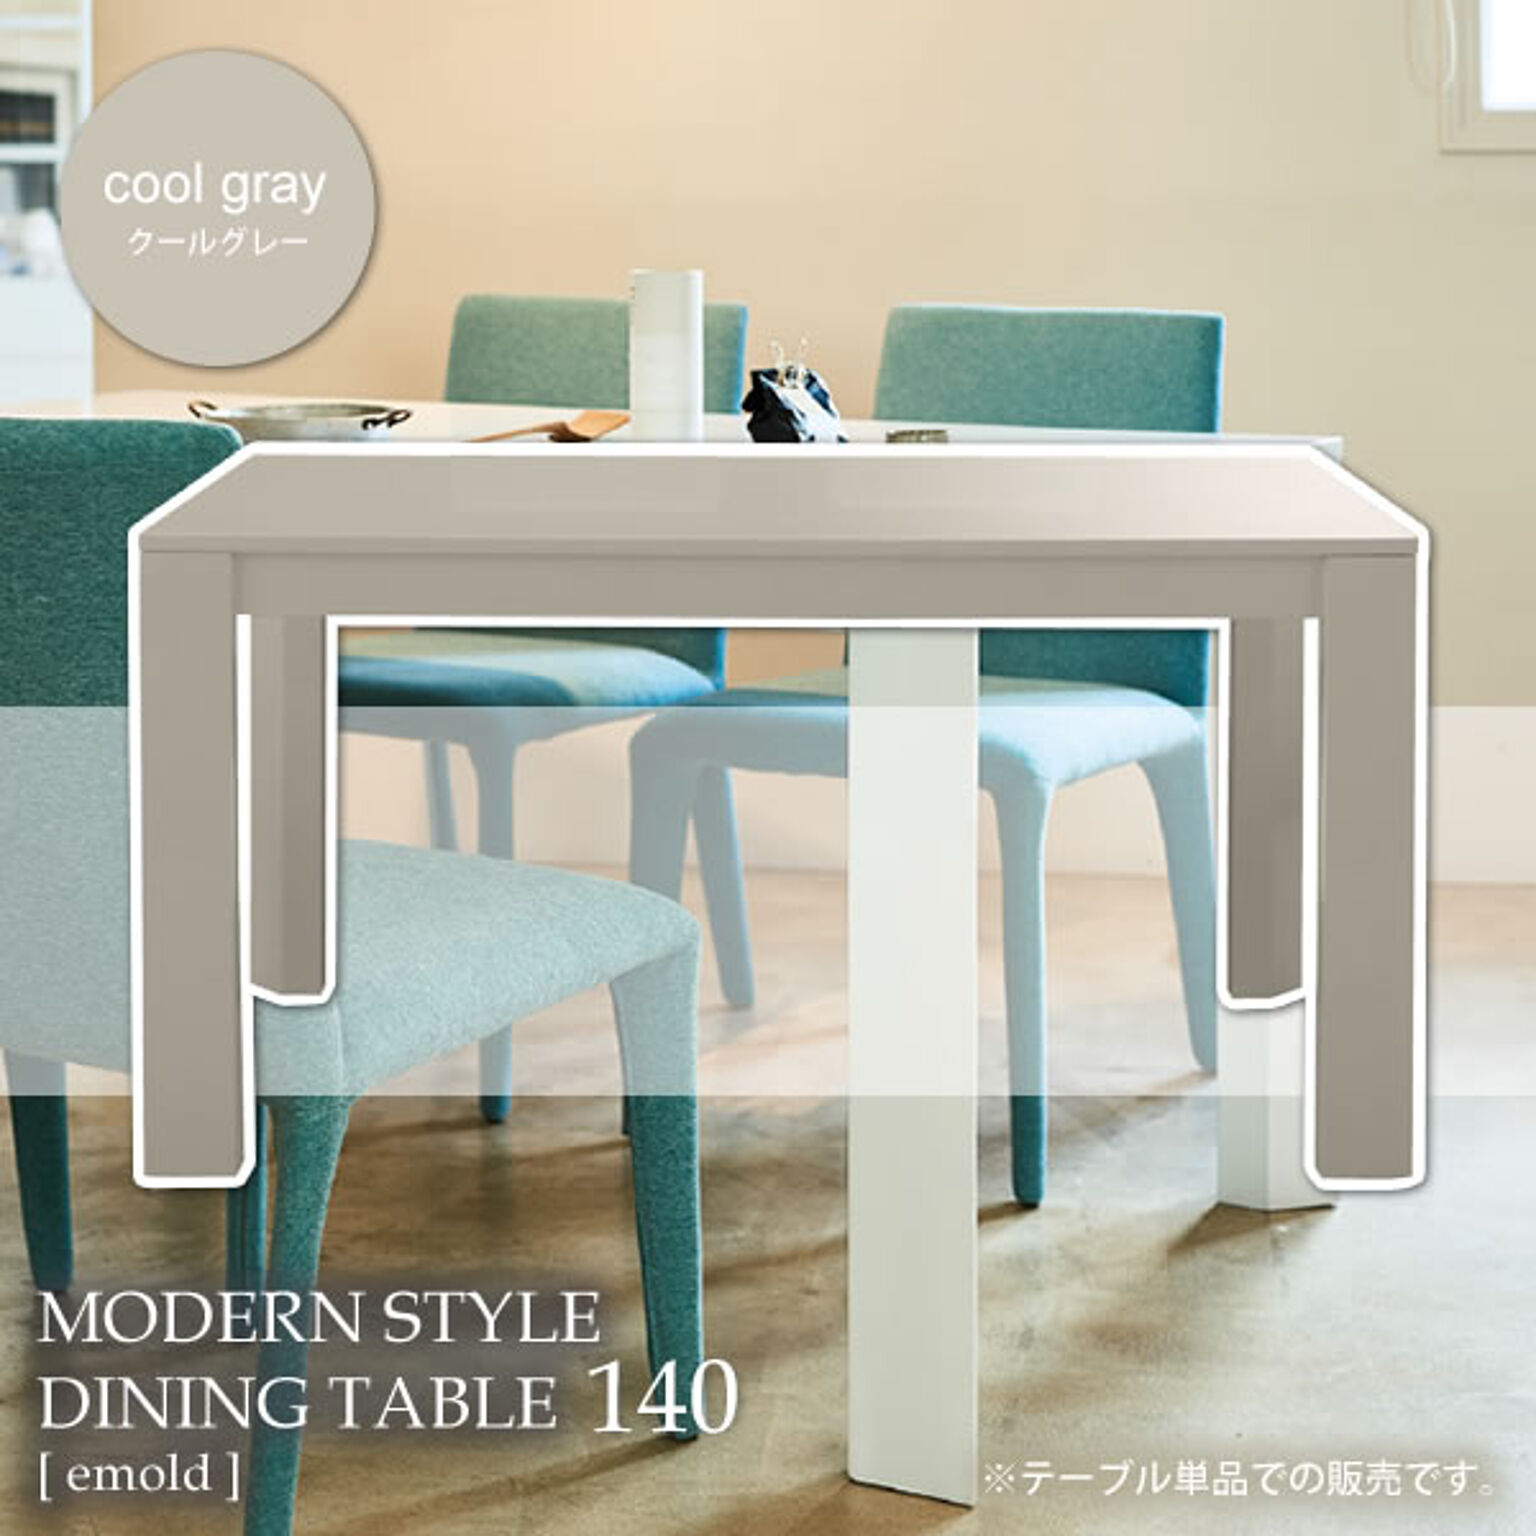 クールグレー ダイニングテーブル 幅140 机 つくえ【emold】 (アーバン) 北欧 カフェ シンプル モダン クール 